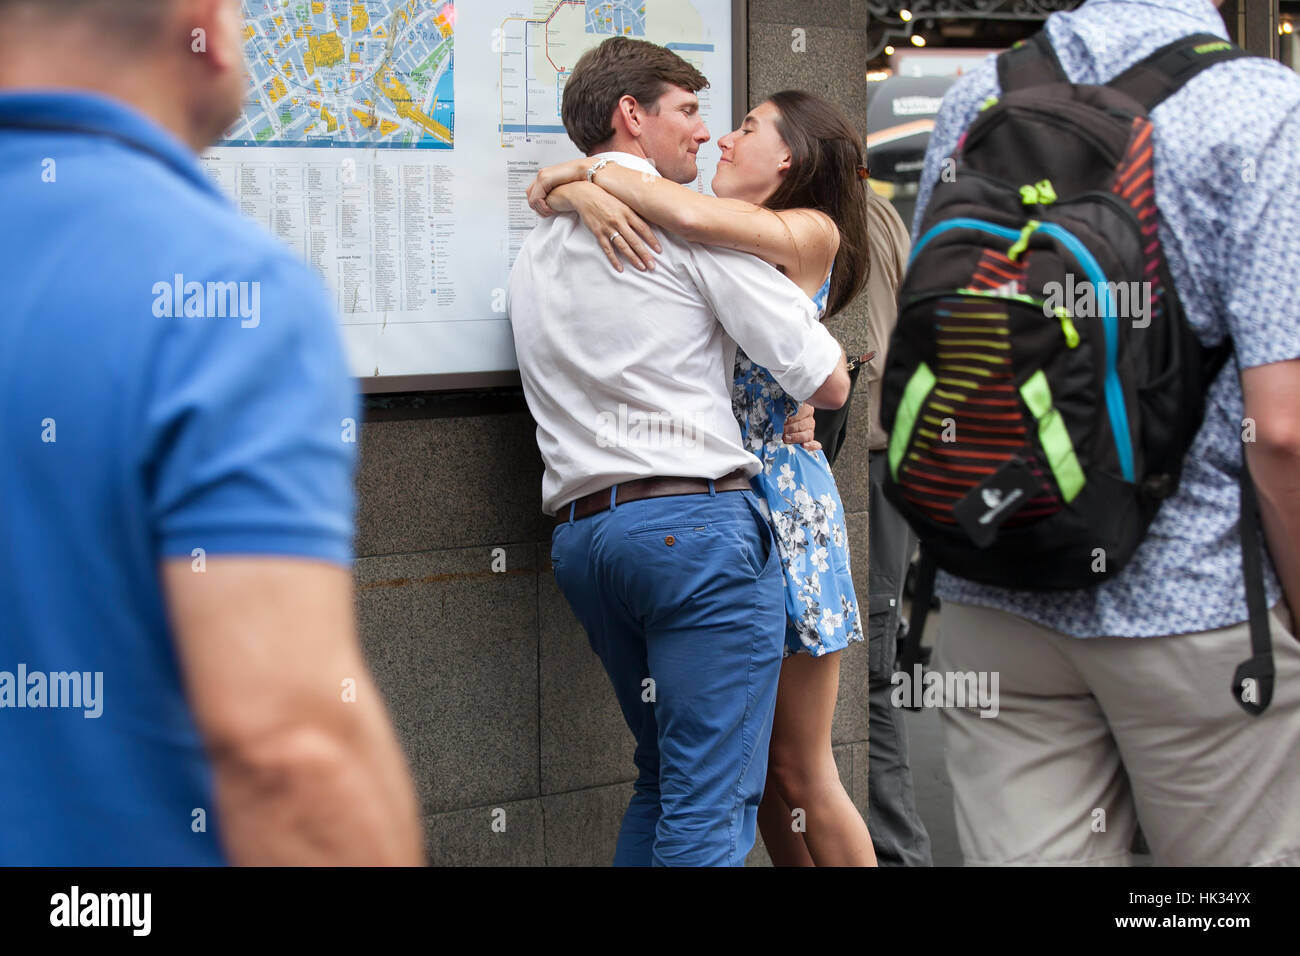 Londres, Angleterre - le 12 juillet 2016 Jeune couple aimant et s'embrasser à l'heure de pointe, près de la station de métro Covent Garden Banque D'Images